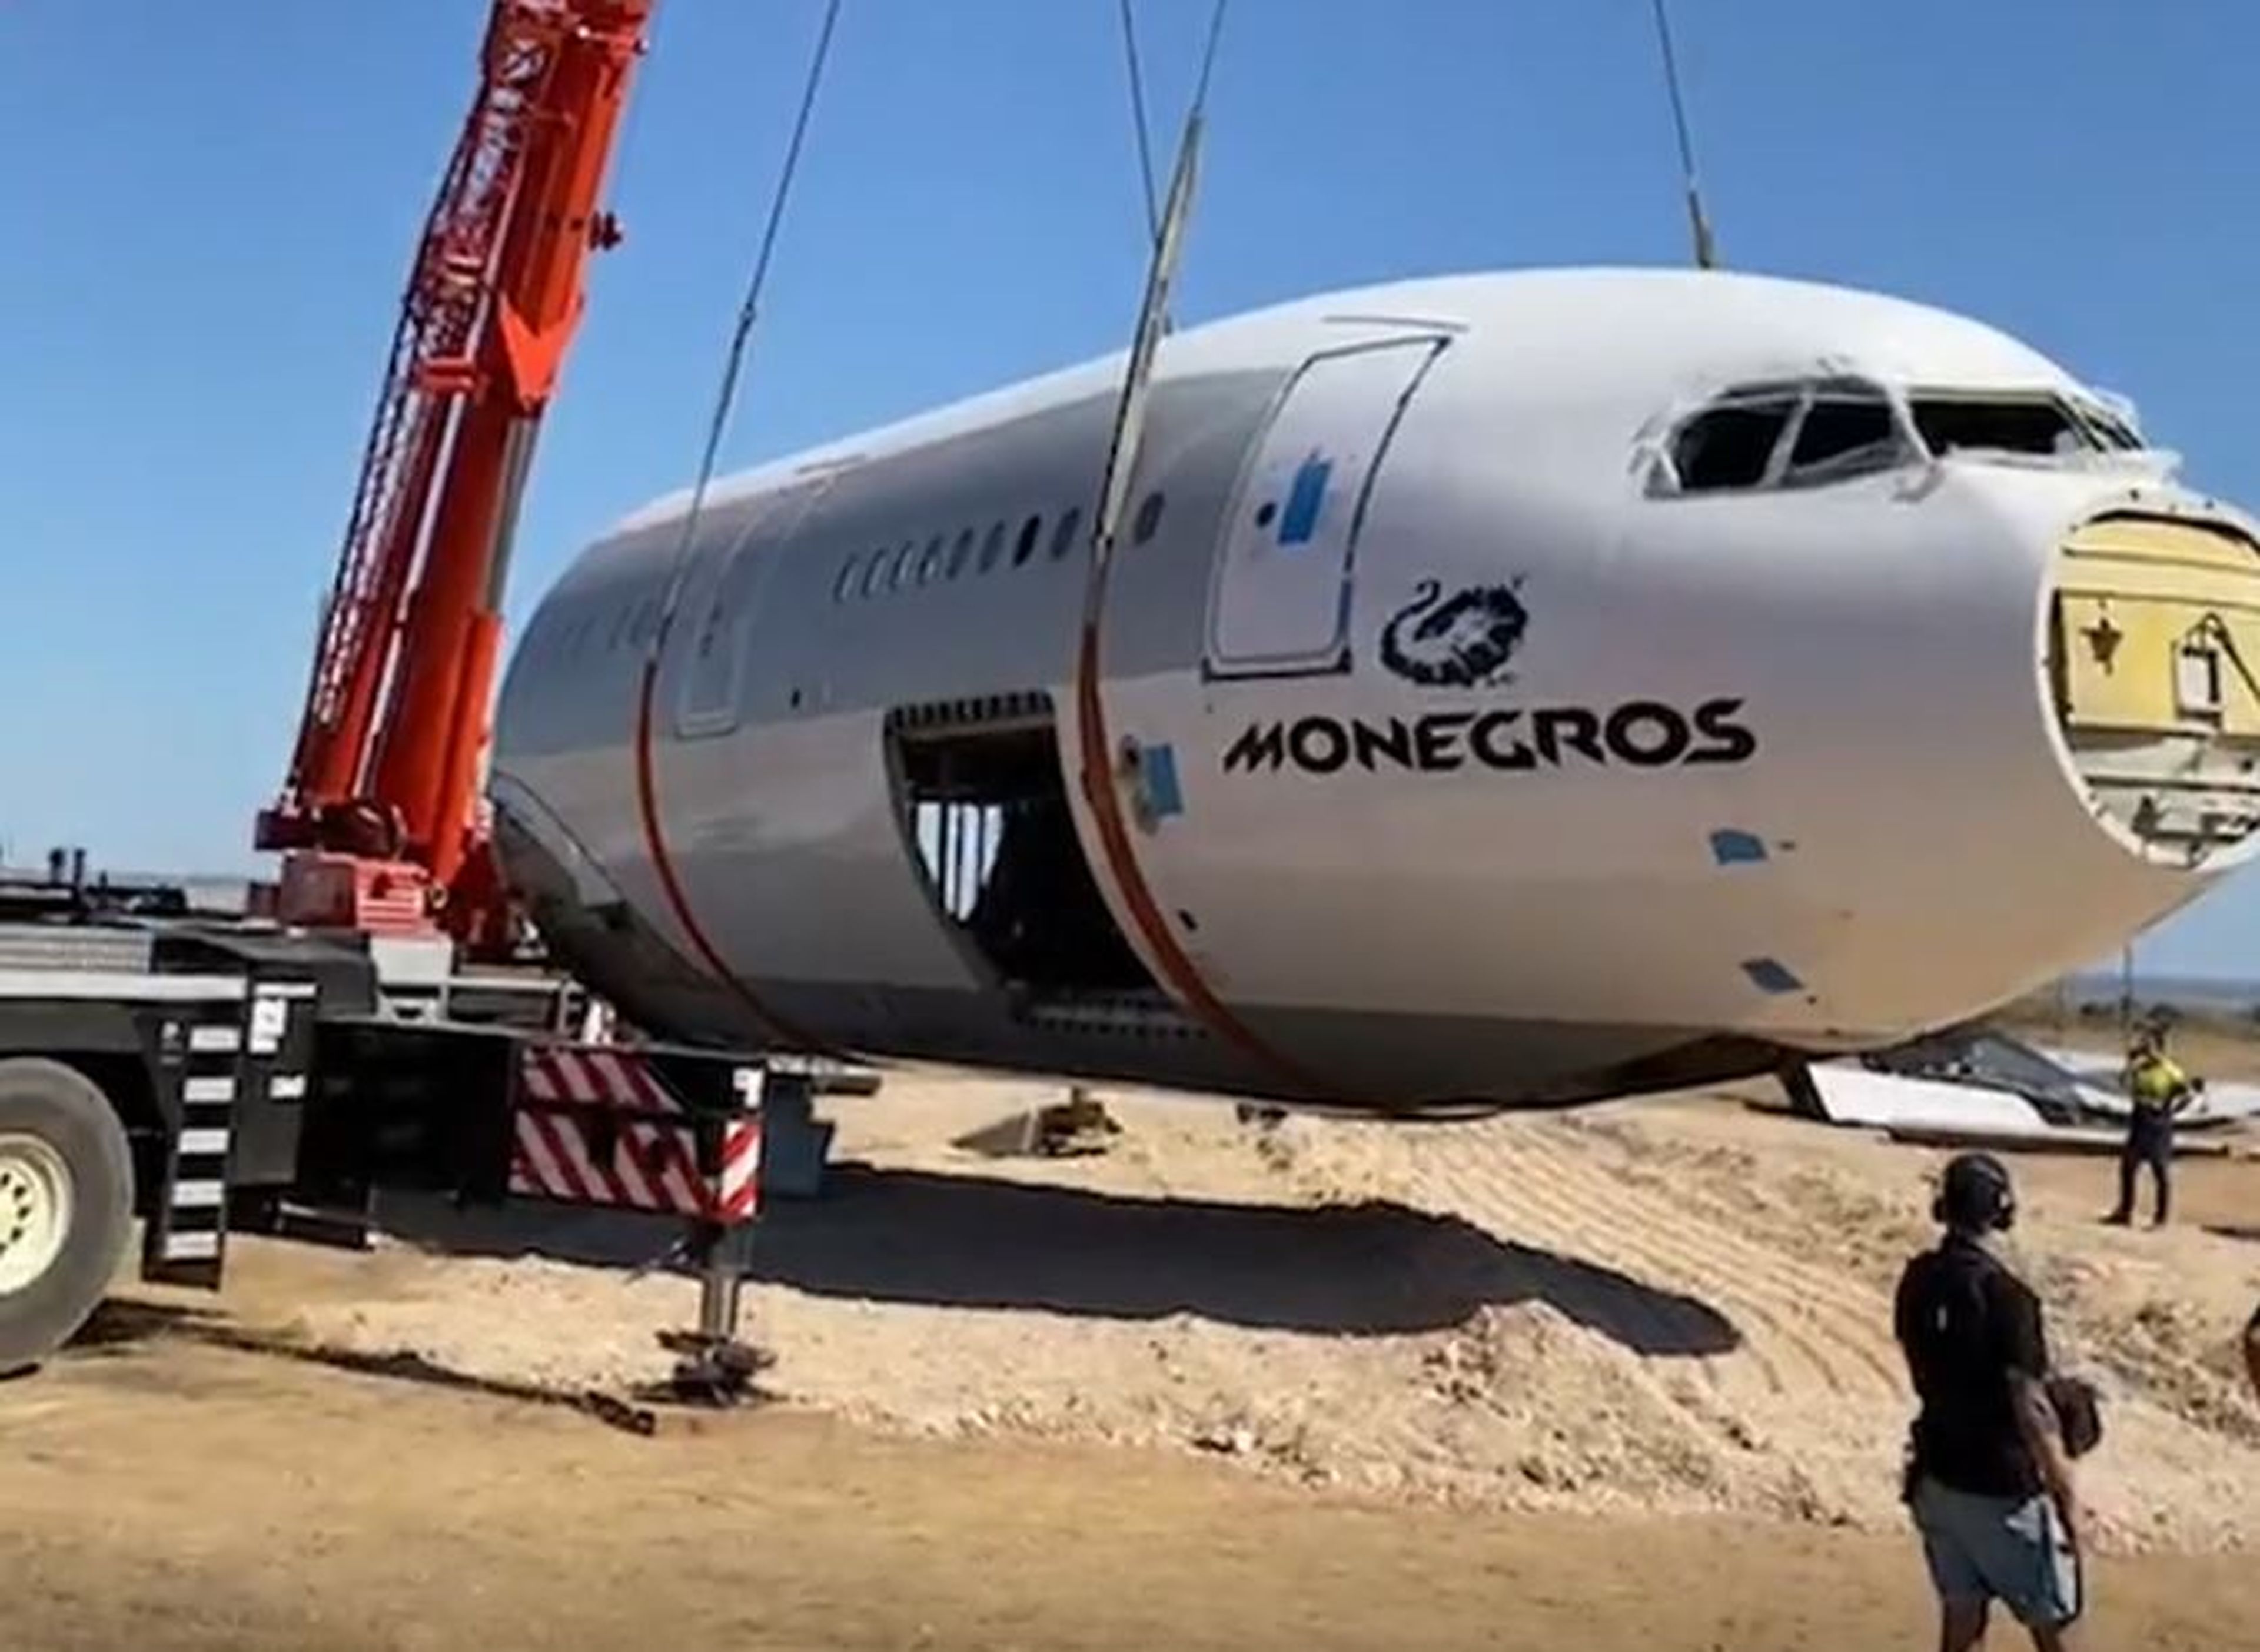 Operarios trasladan el avión al desierto de Los Monegros. Monegros Desert Festival/Instagram